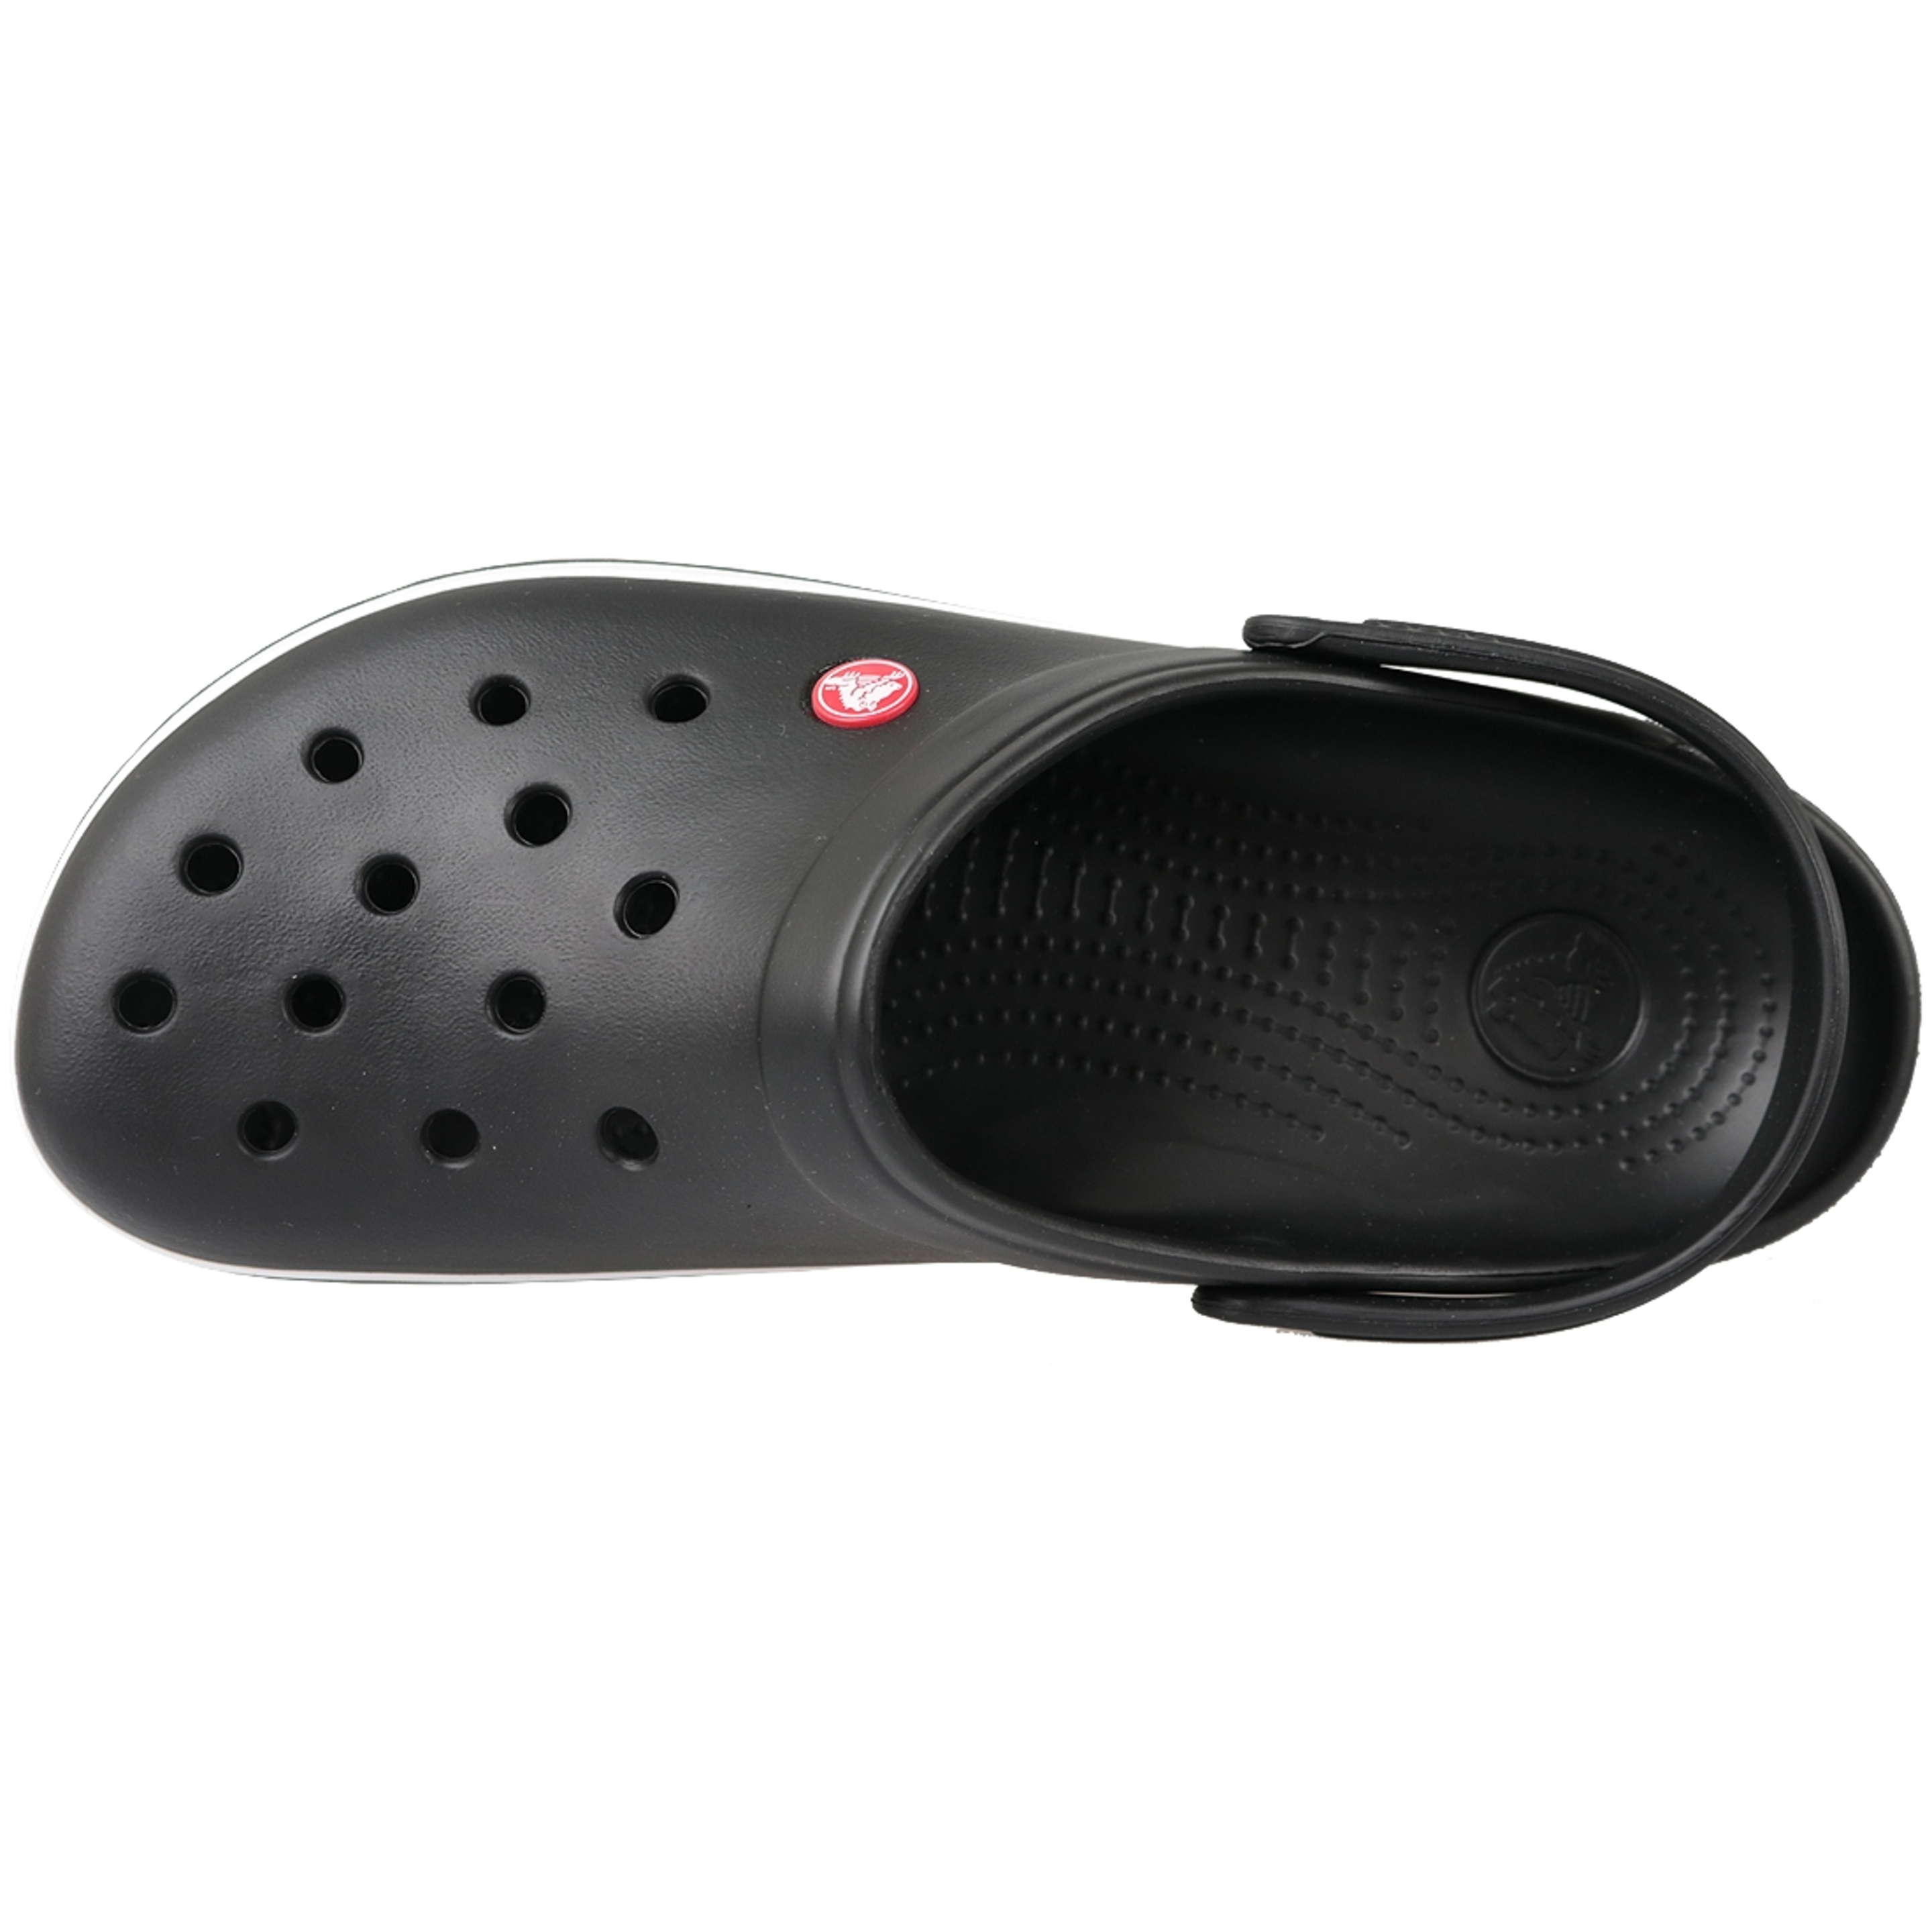 Crocs Crocband 11016-001